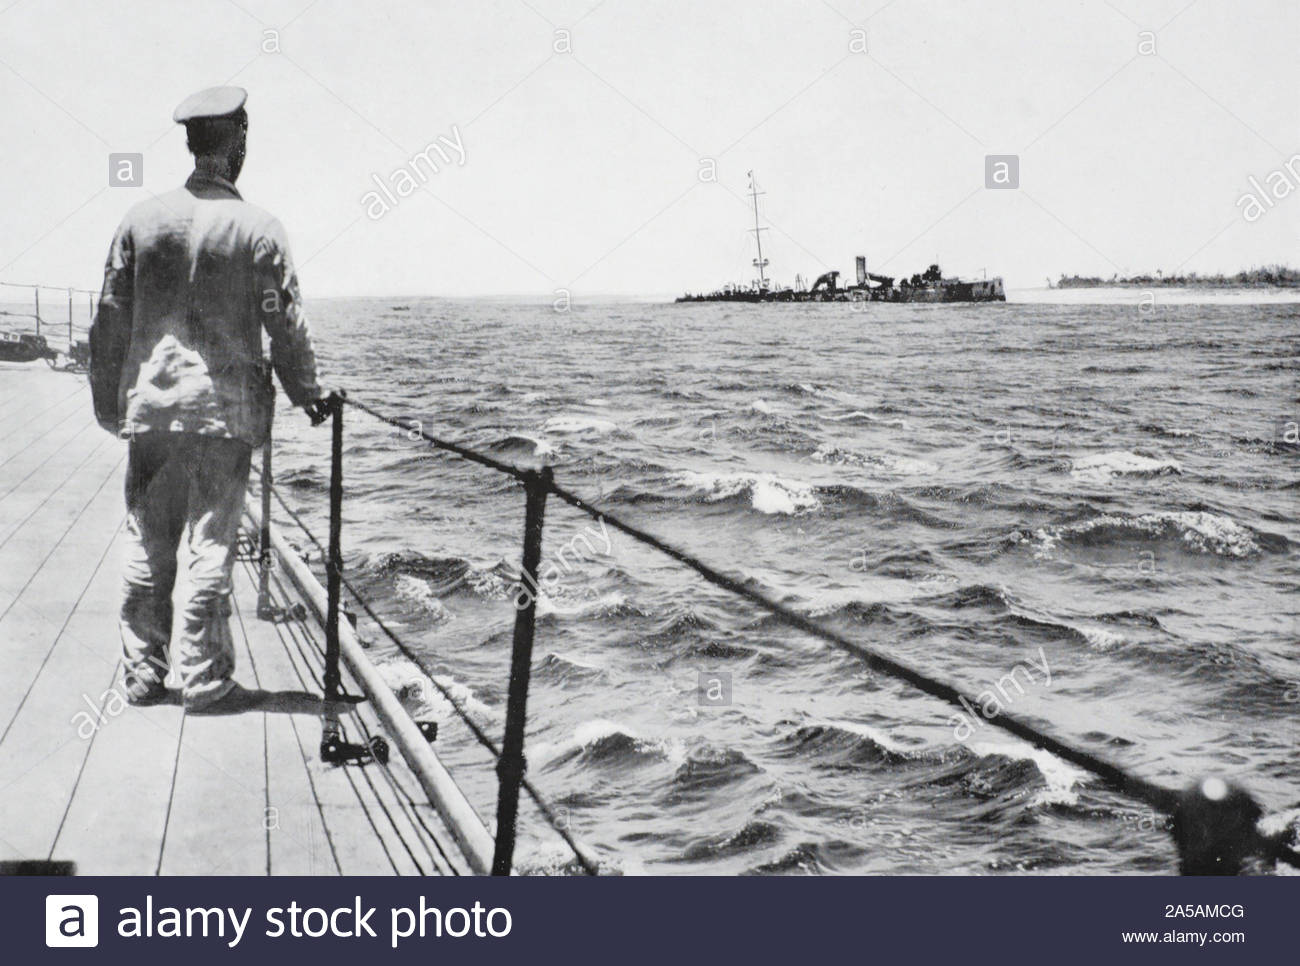 WW1 SMS Emden était un croiseur léger de classe Dresde construit pour la Kaiserliche Marine, illustré ici mis à la masse à l'offshore des îles Cocos Keeling après avoir été désactivé par la Marine royale australienne croiseur HMAS Sydney pendant la bataille de Cocos, vintage photographie de 1914 Banque D'Images